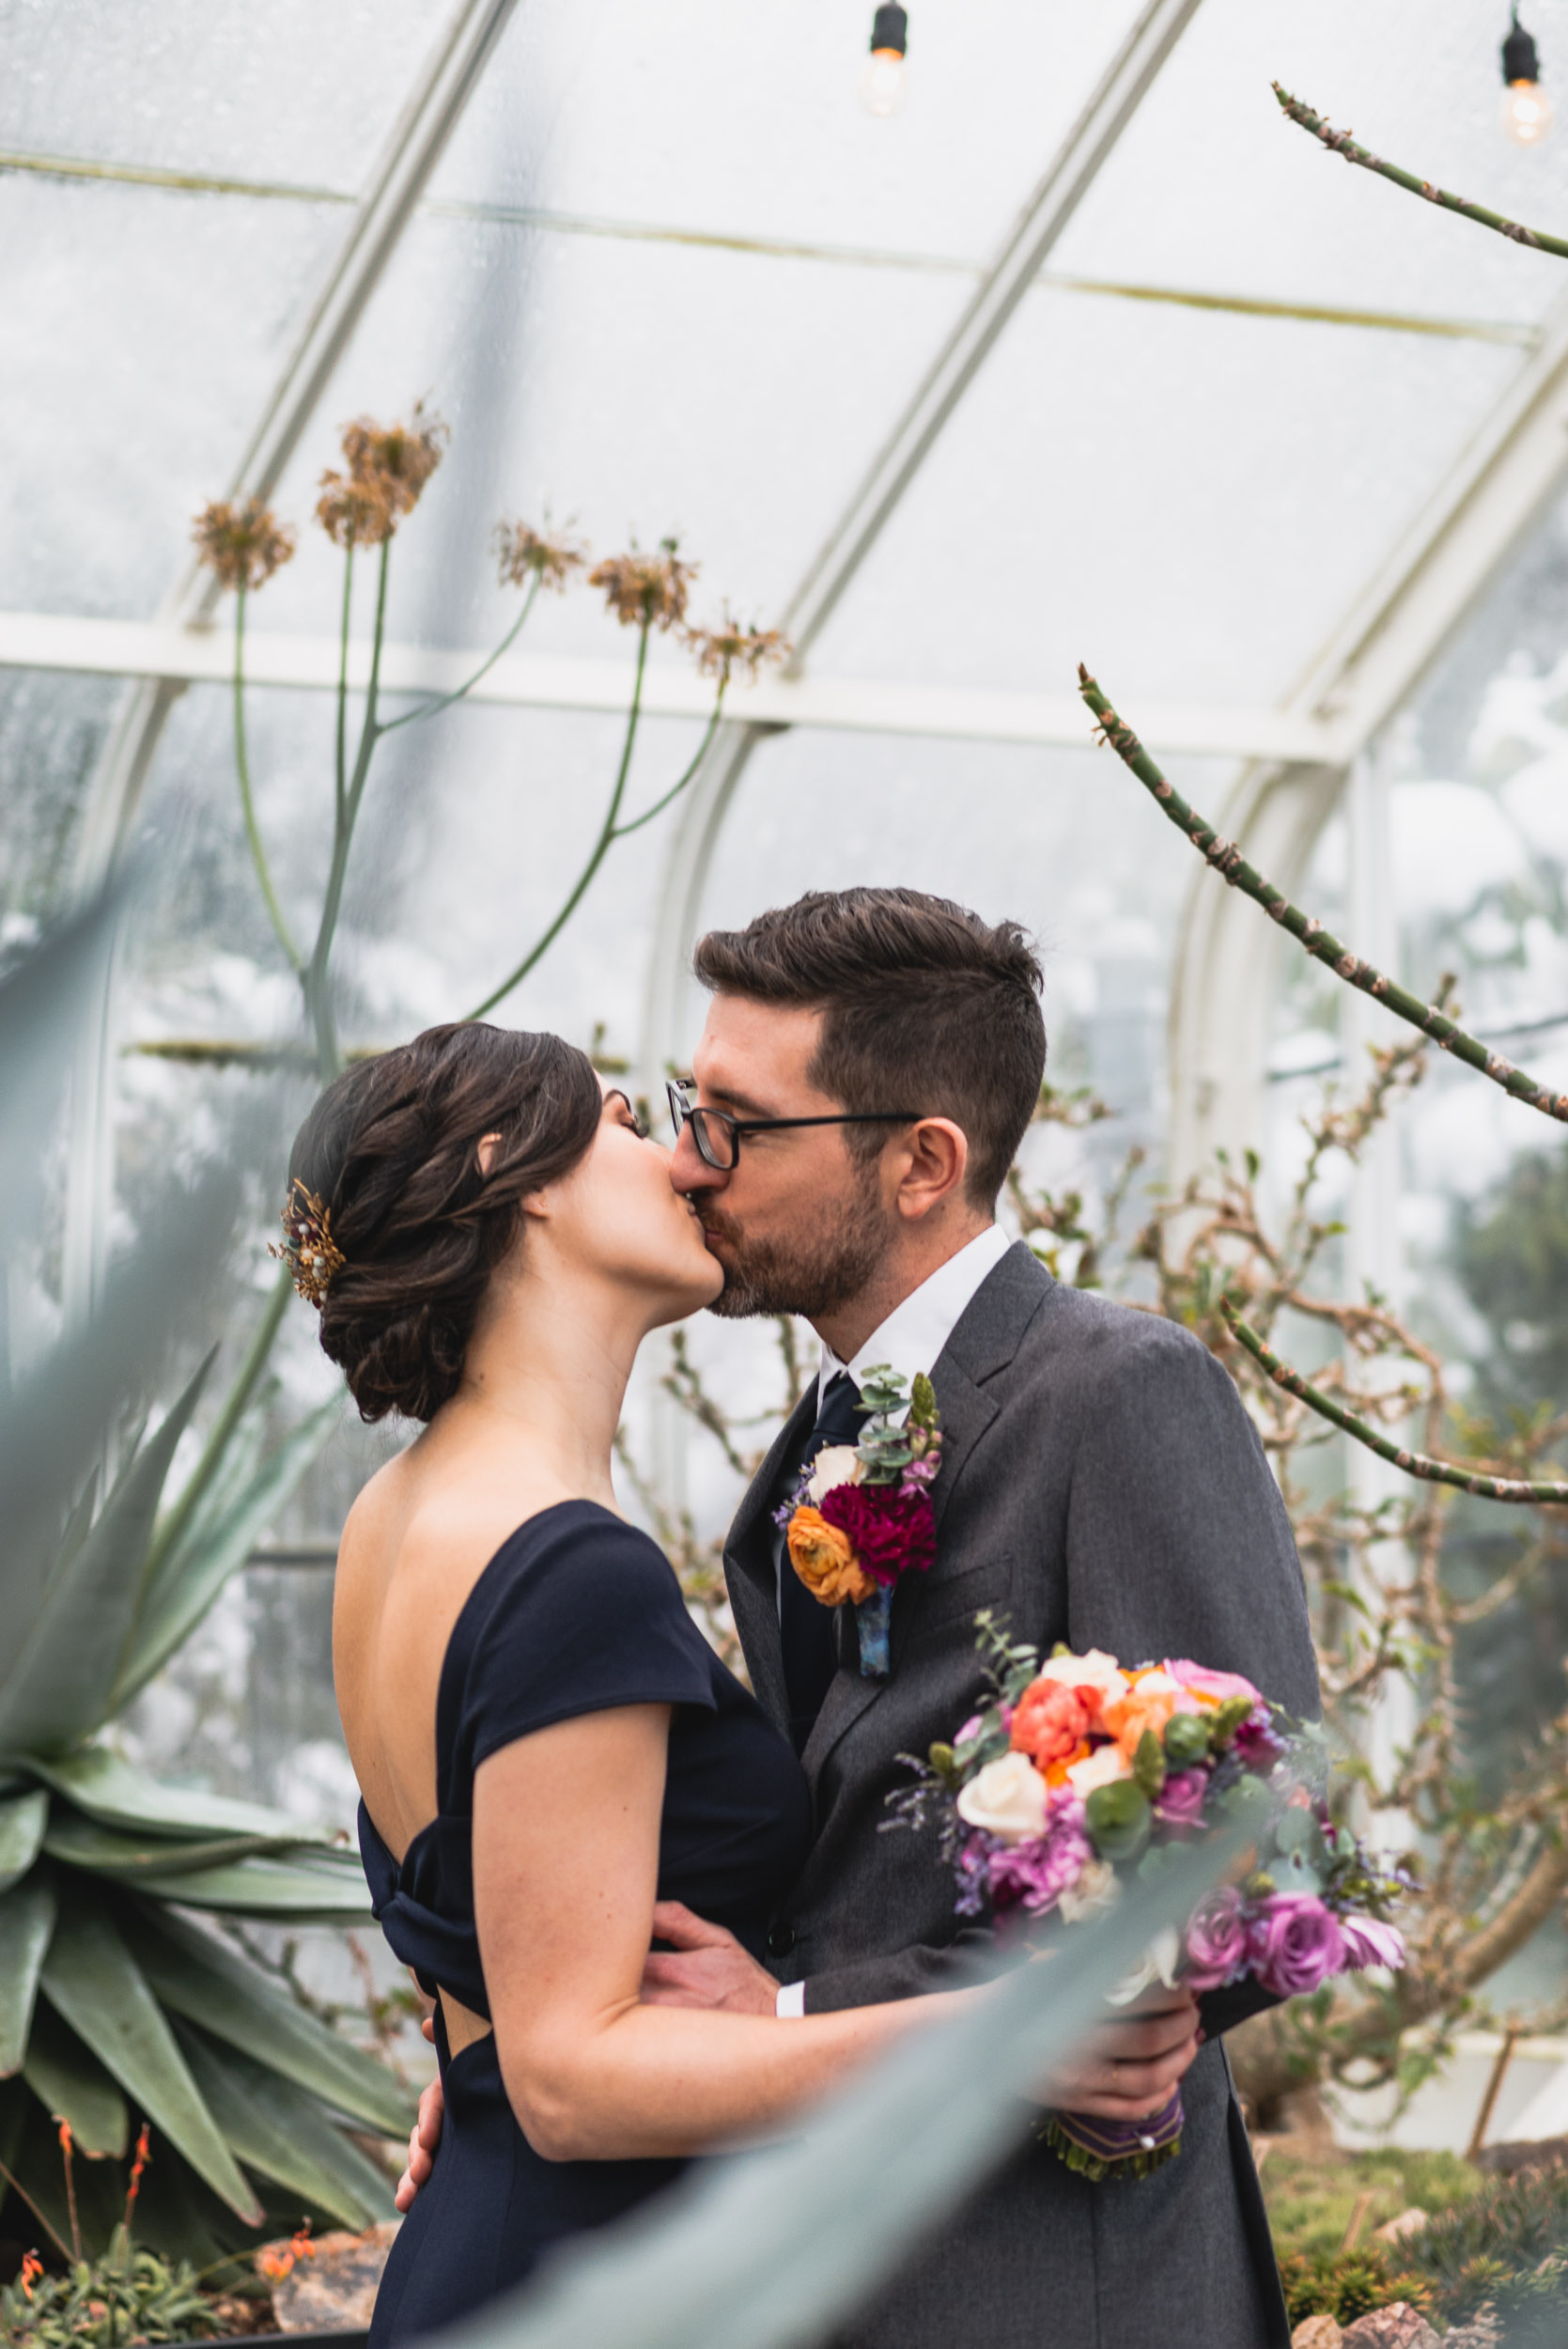 Bride and groom kiss among plants